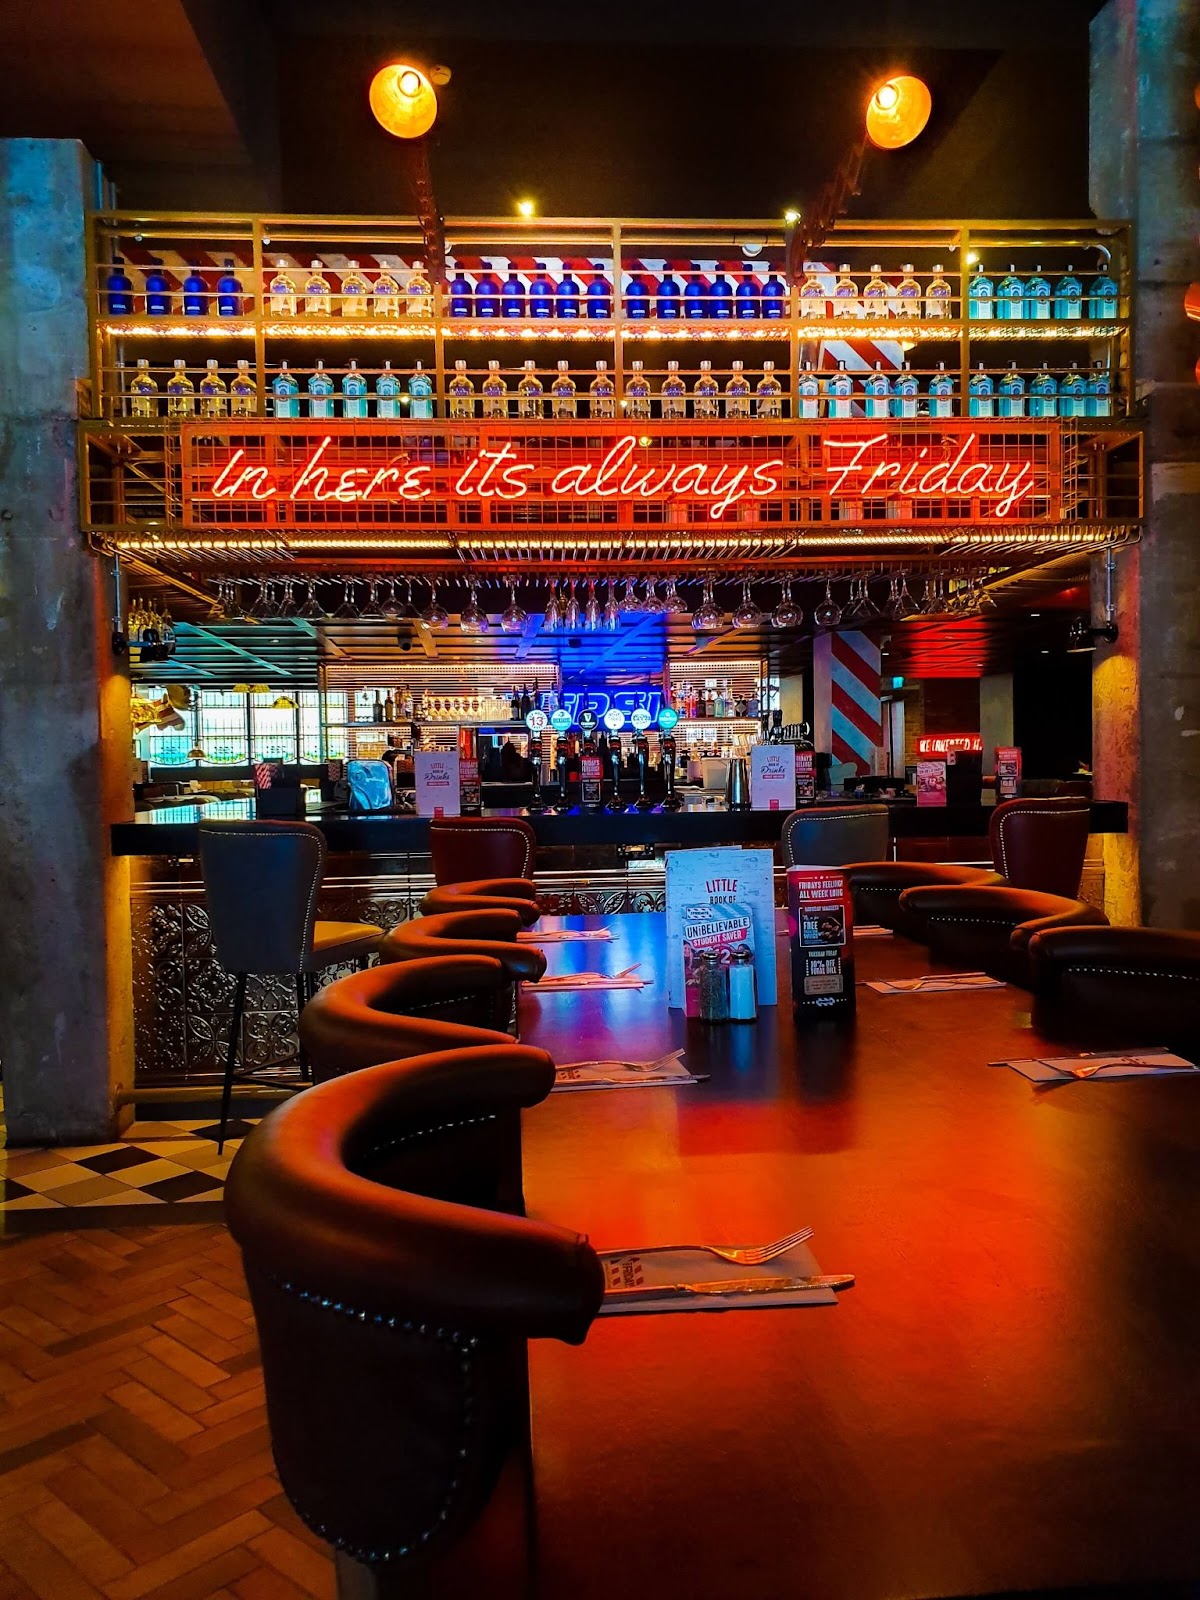 Pubs in Ireland, in here its always Friday, neon lighting